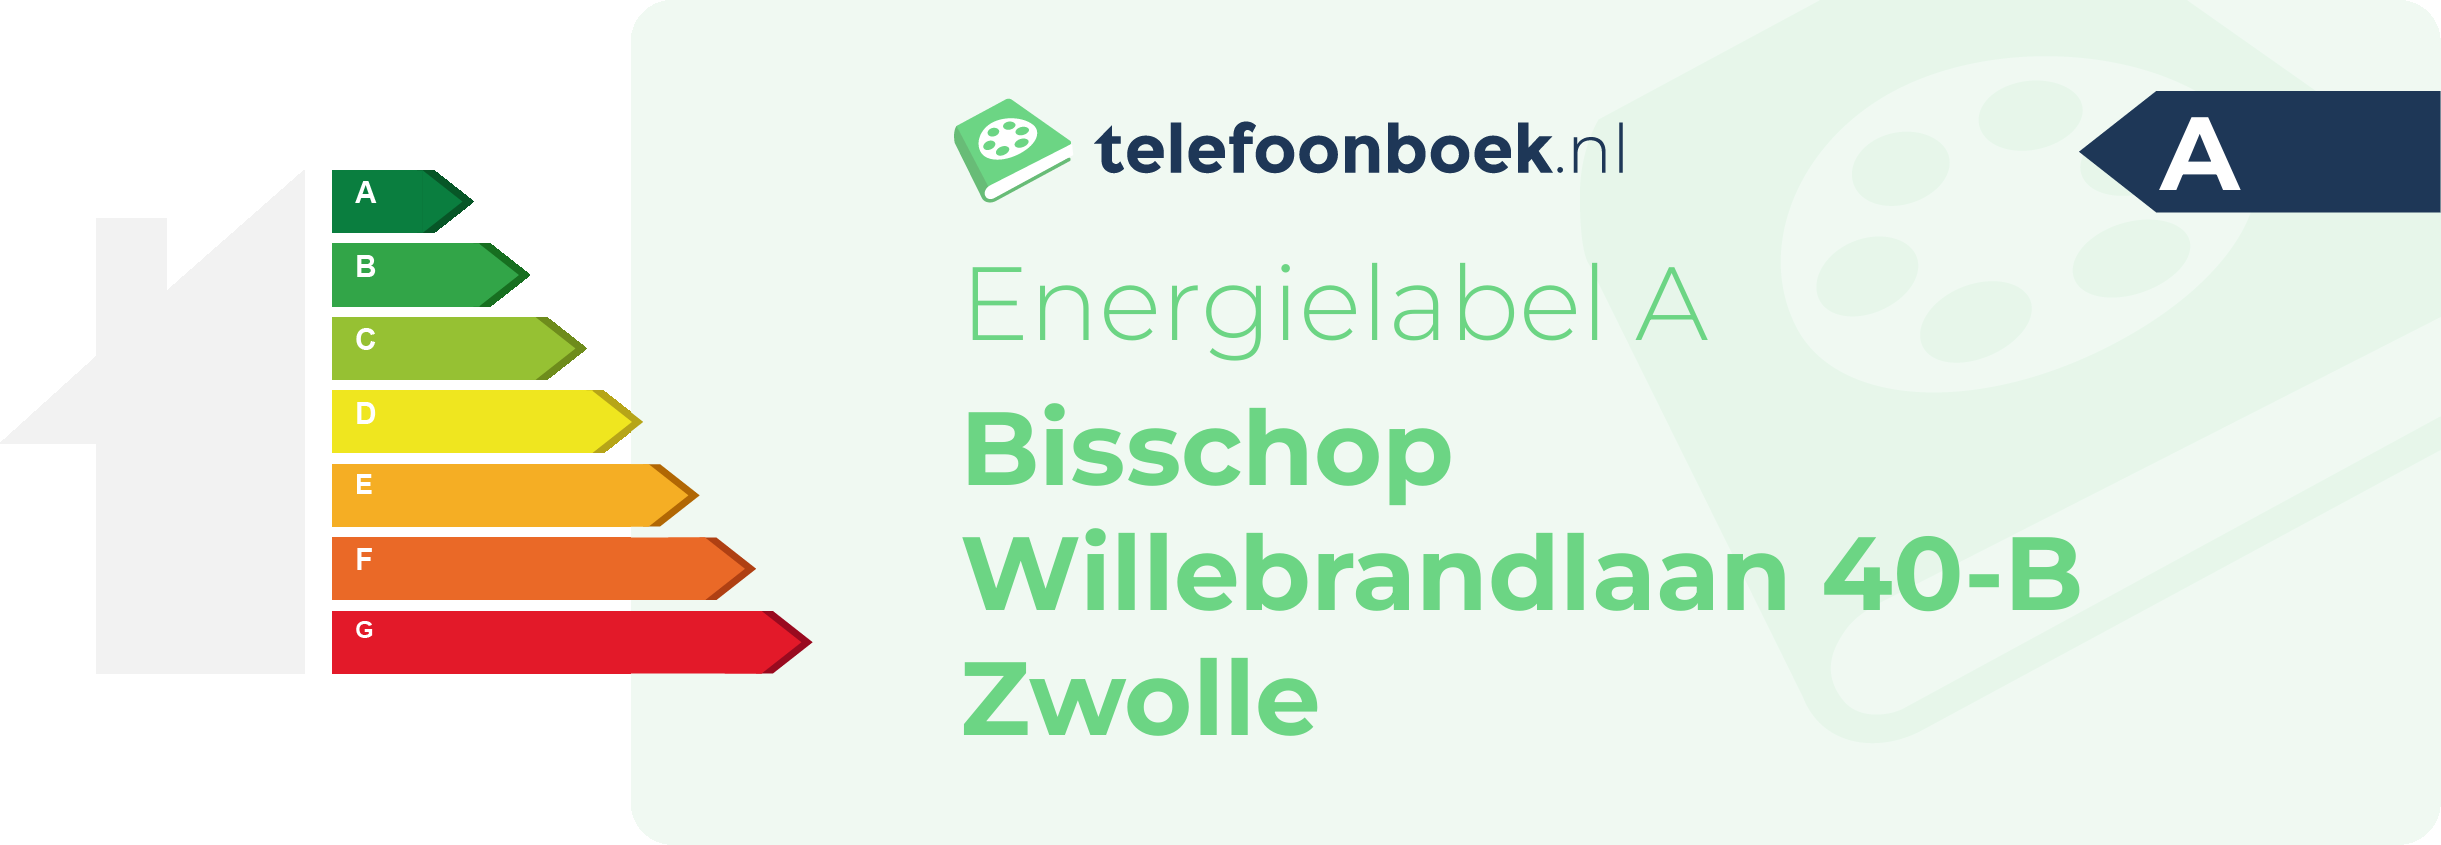 Energielabel Bisschop Willebrandlaan 40-B Zwolle